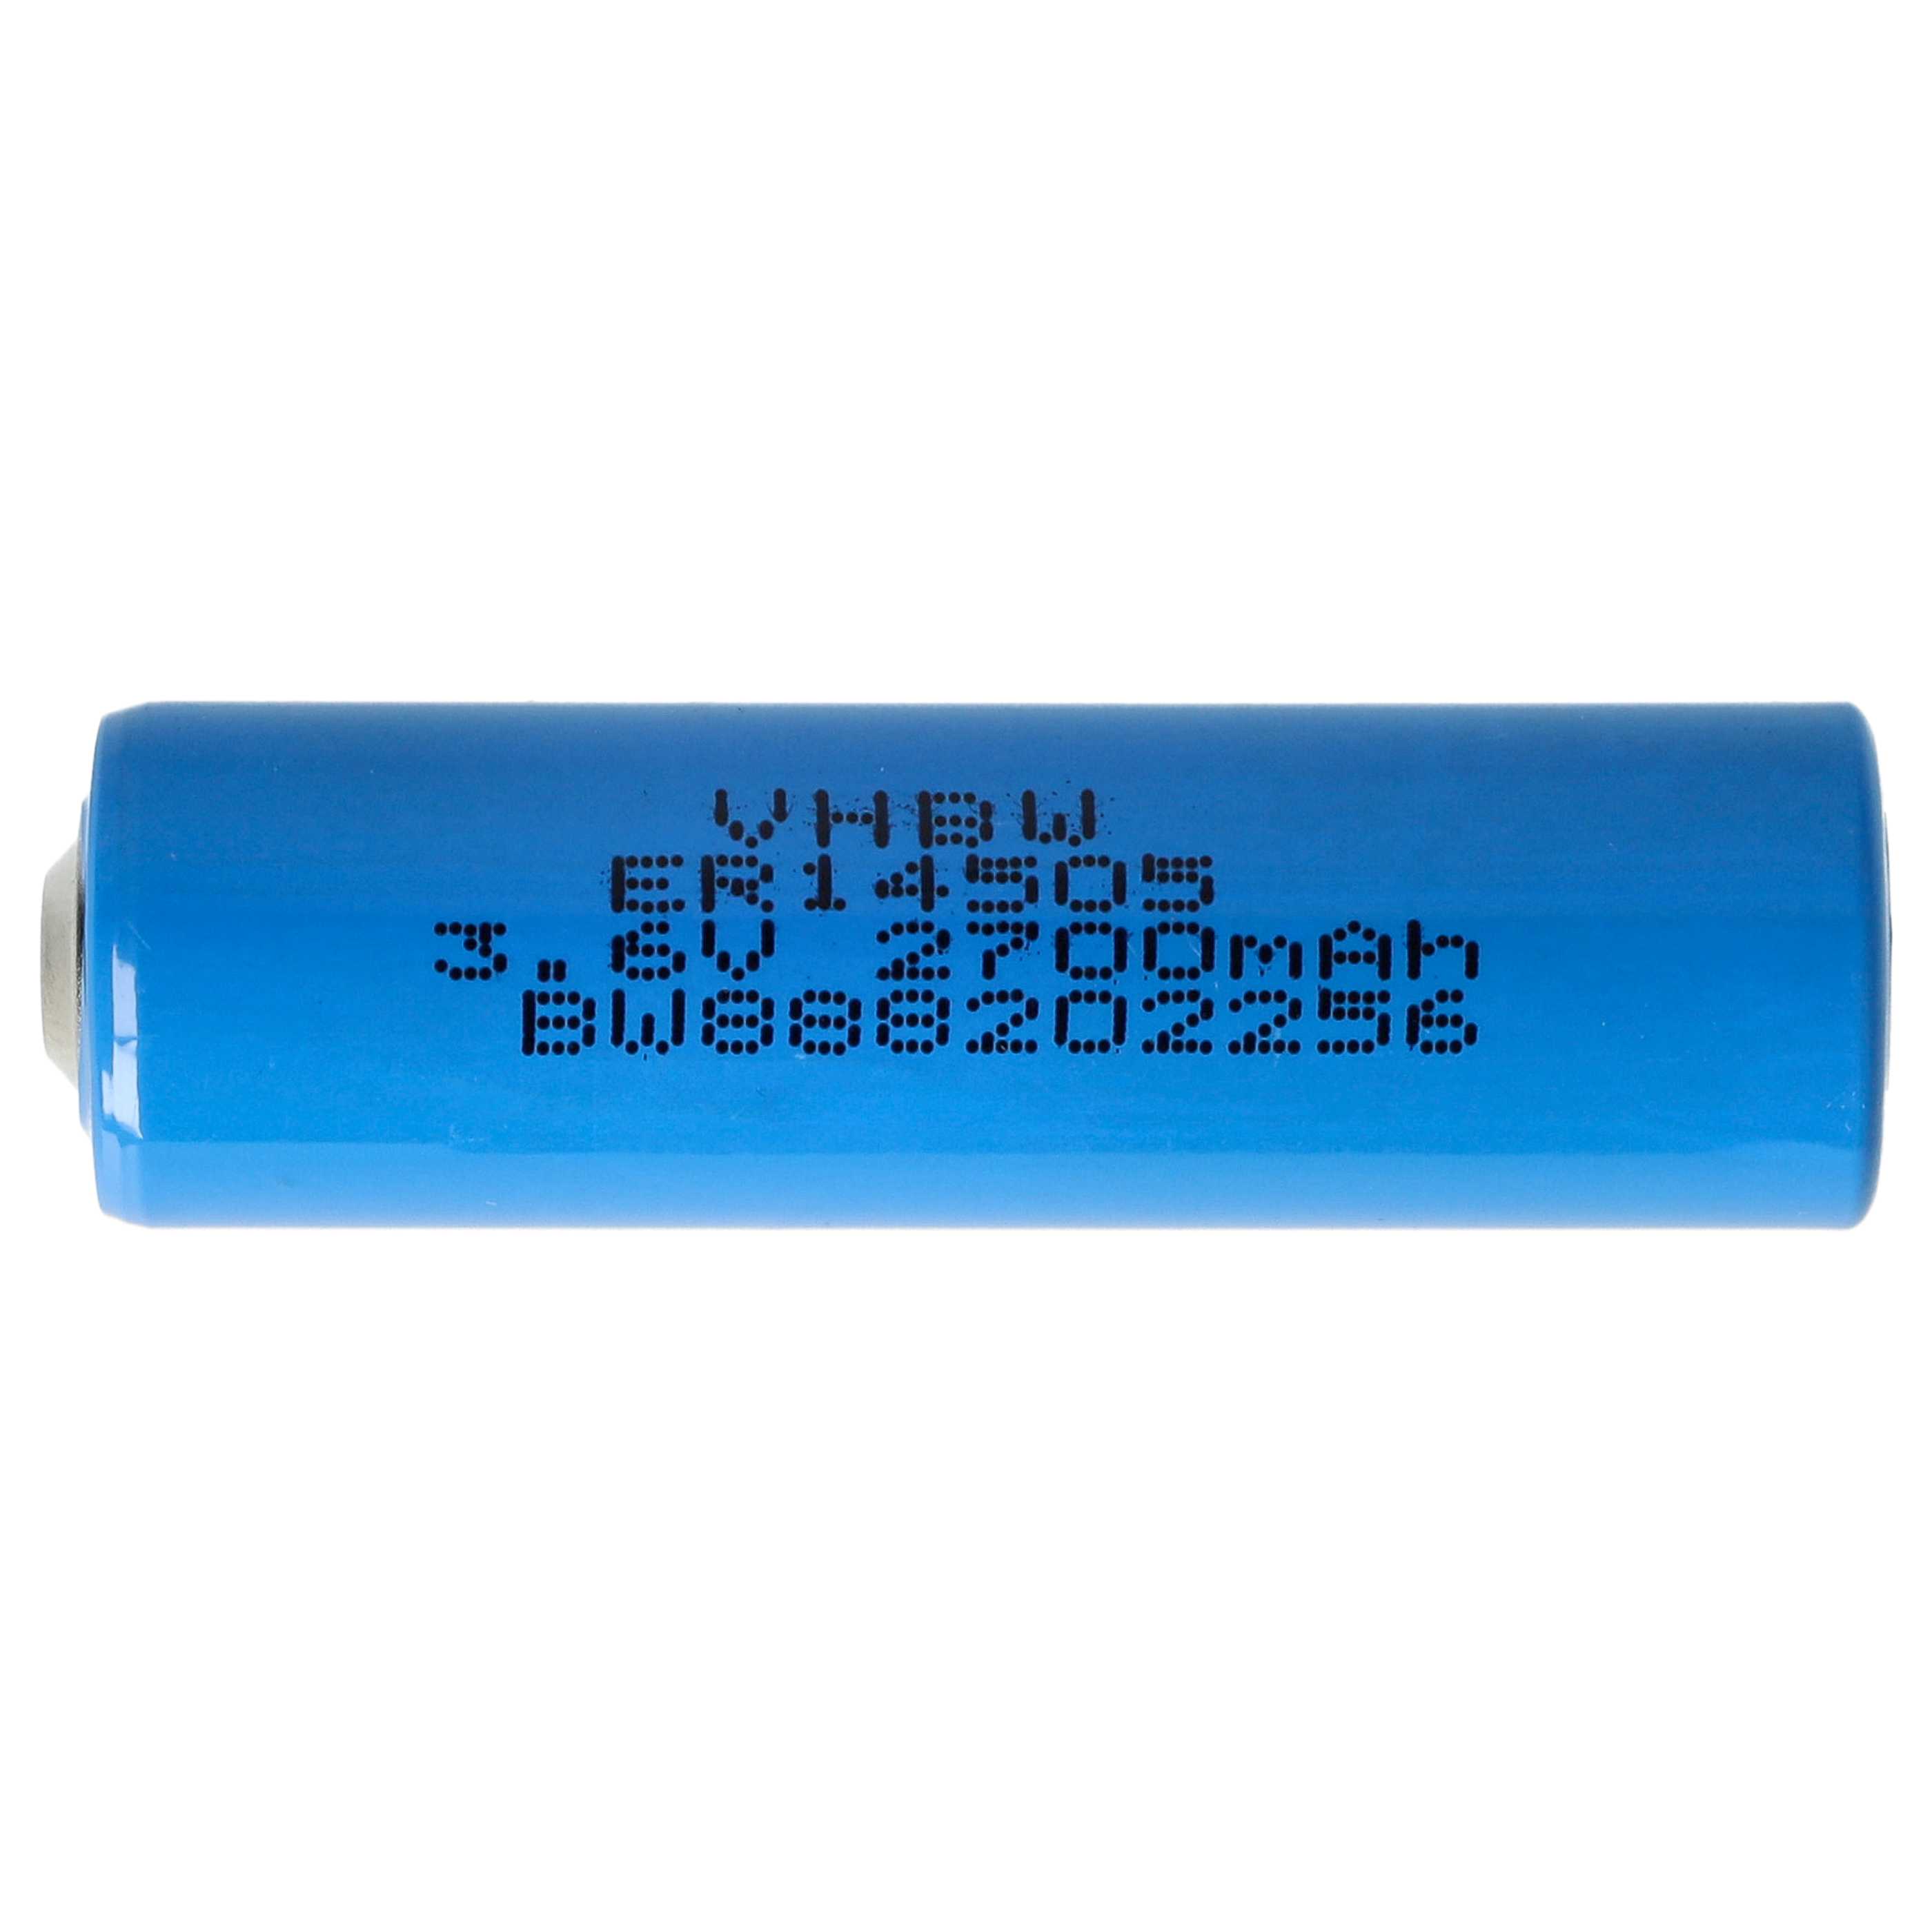 ER14250 Spezial-Batterie passend für Viessmann Trimatik, Trimatik 2 - 2700mAh 3,6V Li-SOCl2